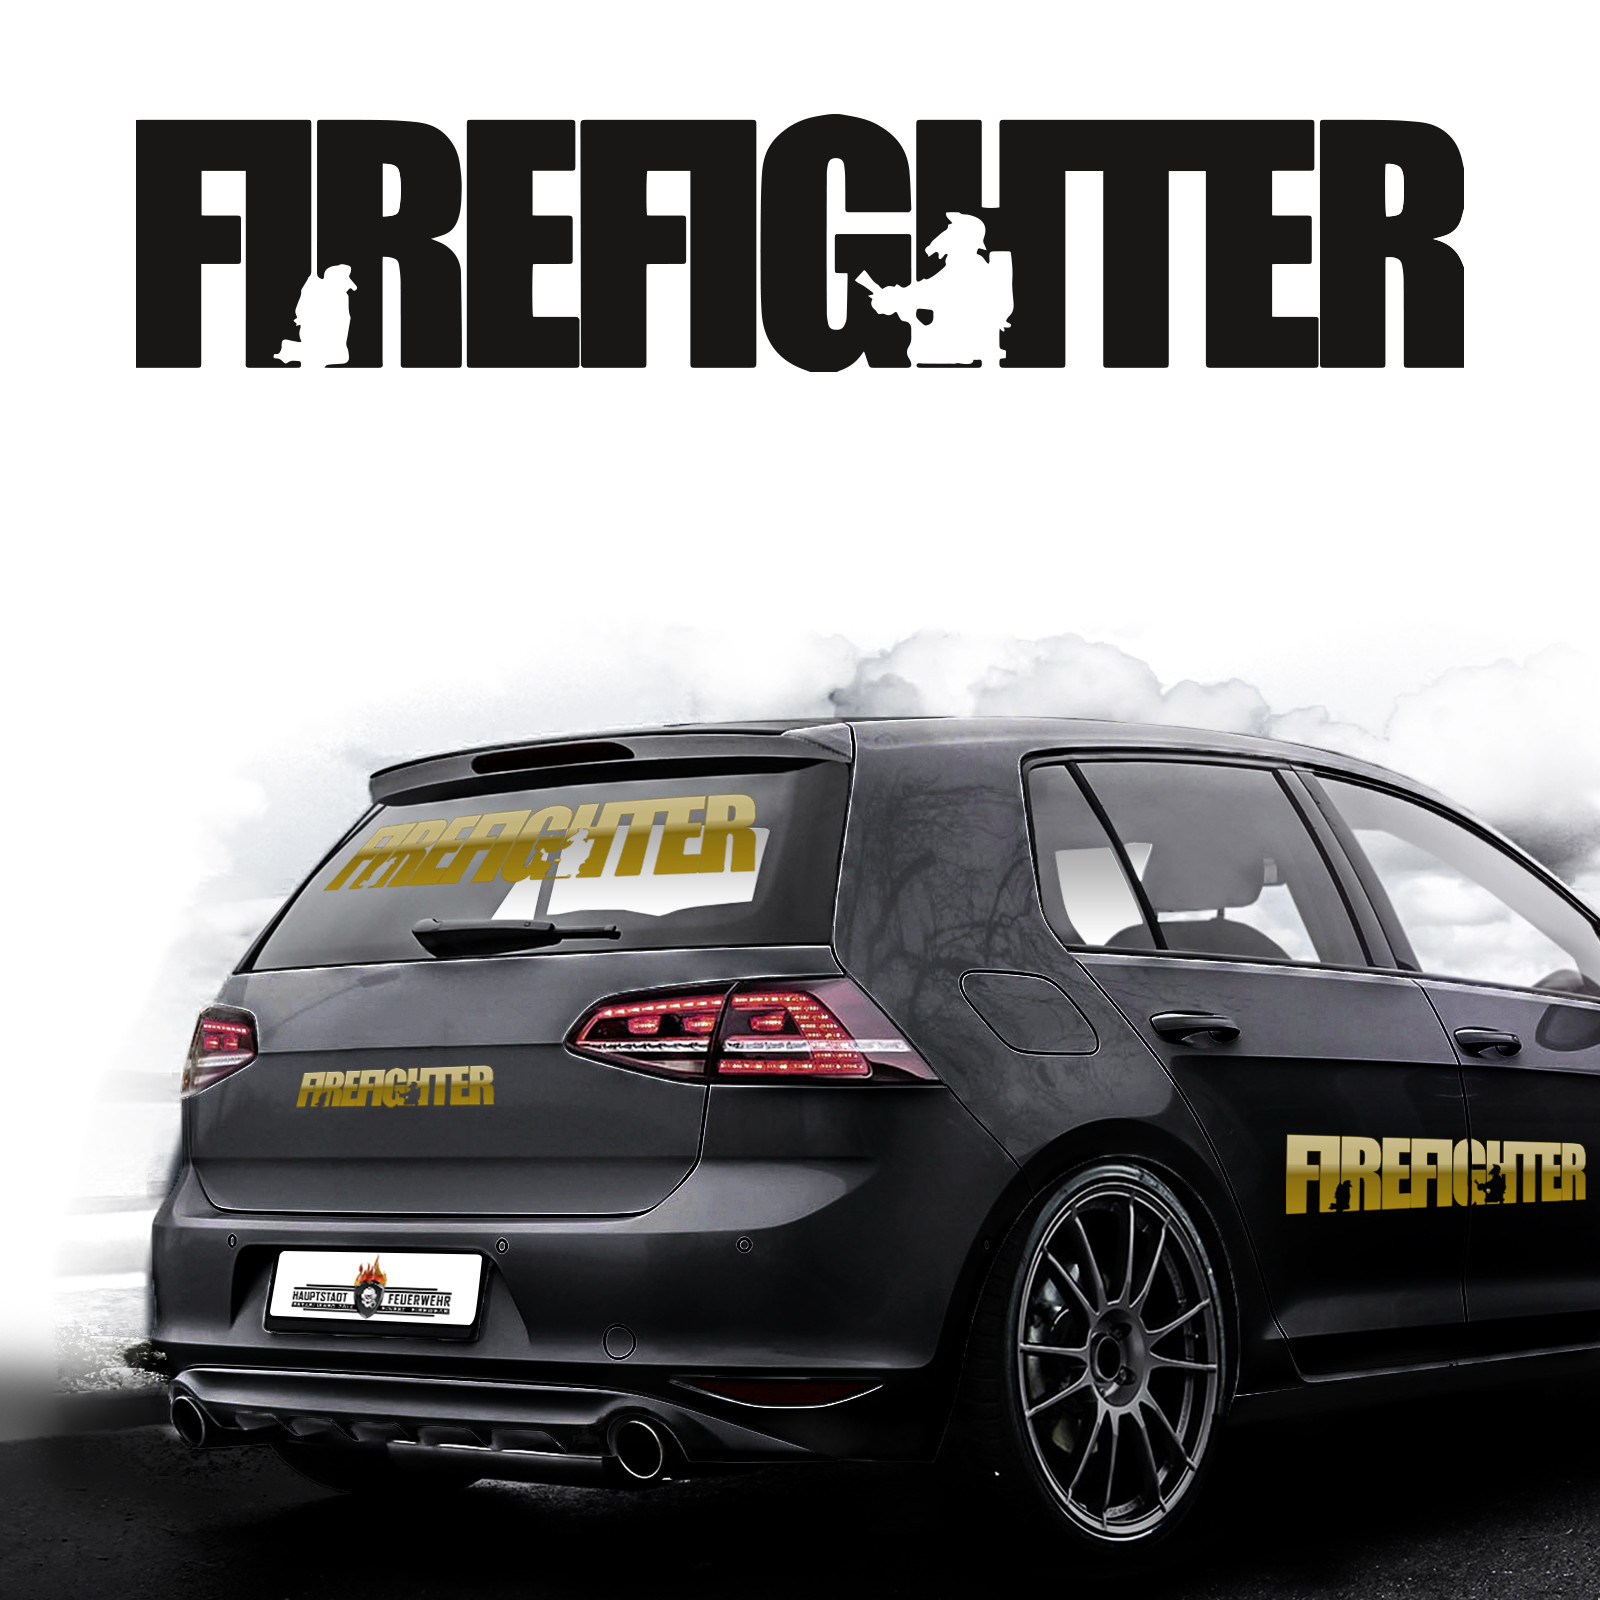 Autoaufkleber Firefighter - Hauptstadtfeuerwehr